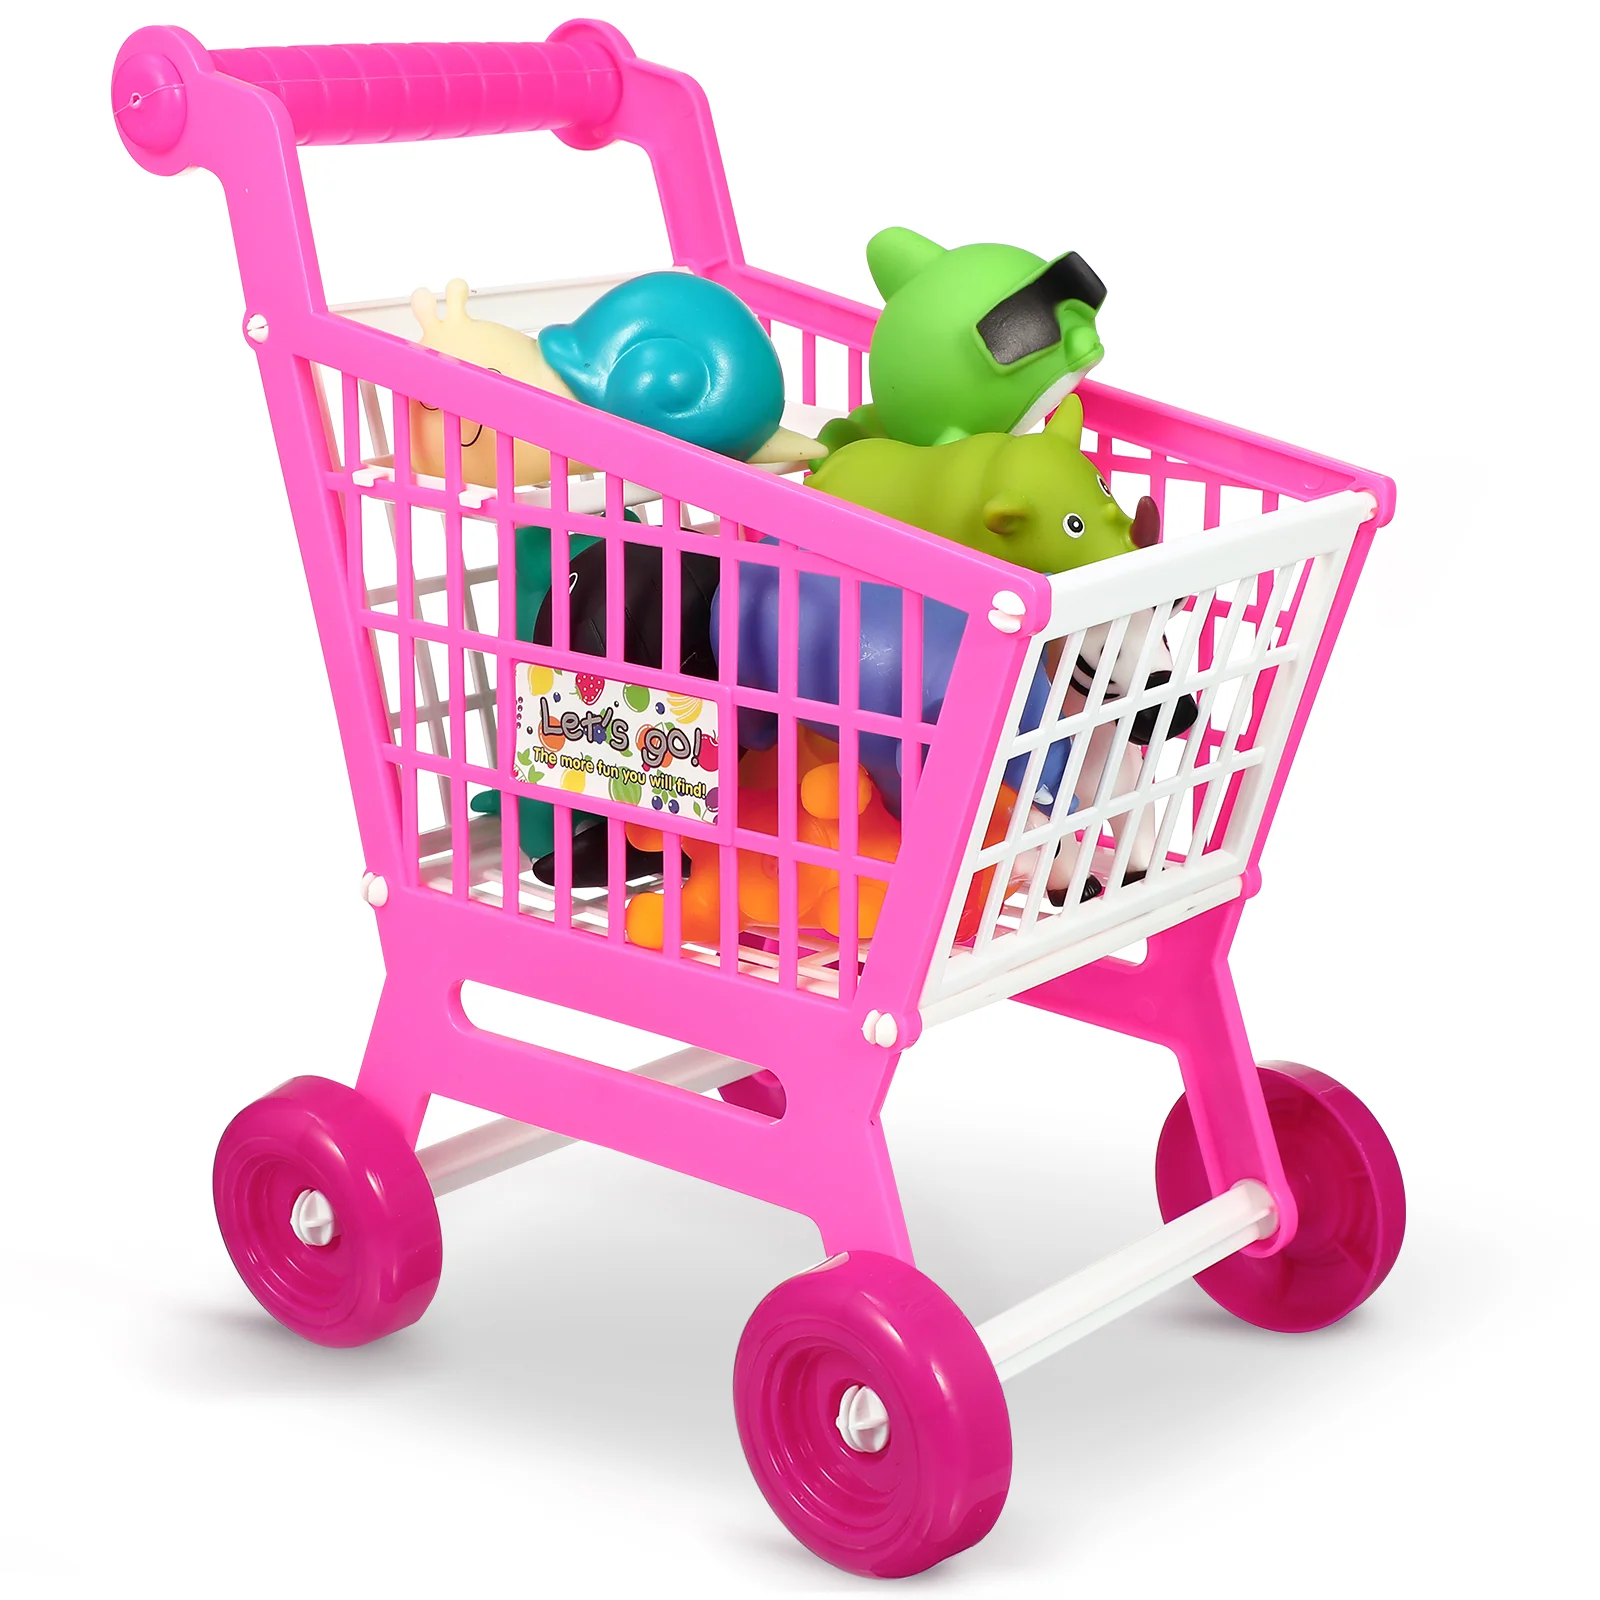 

Имитация корзины для покупок игрушки детские пластиковые мини-продуктовые супермаркеты для малышей из АБС-пластика для малышей